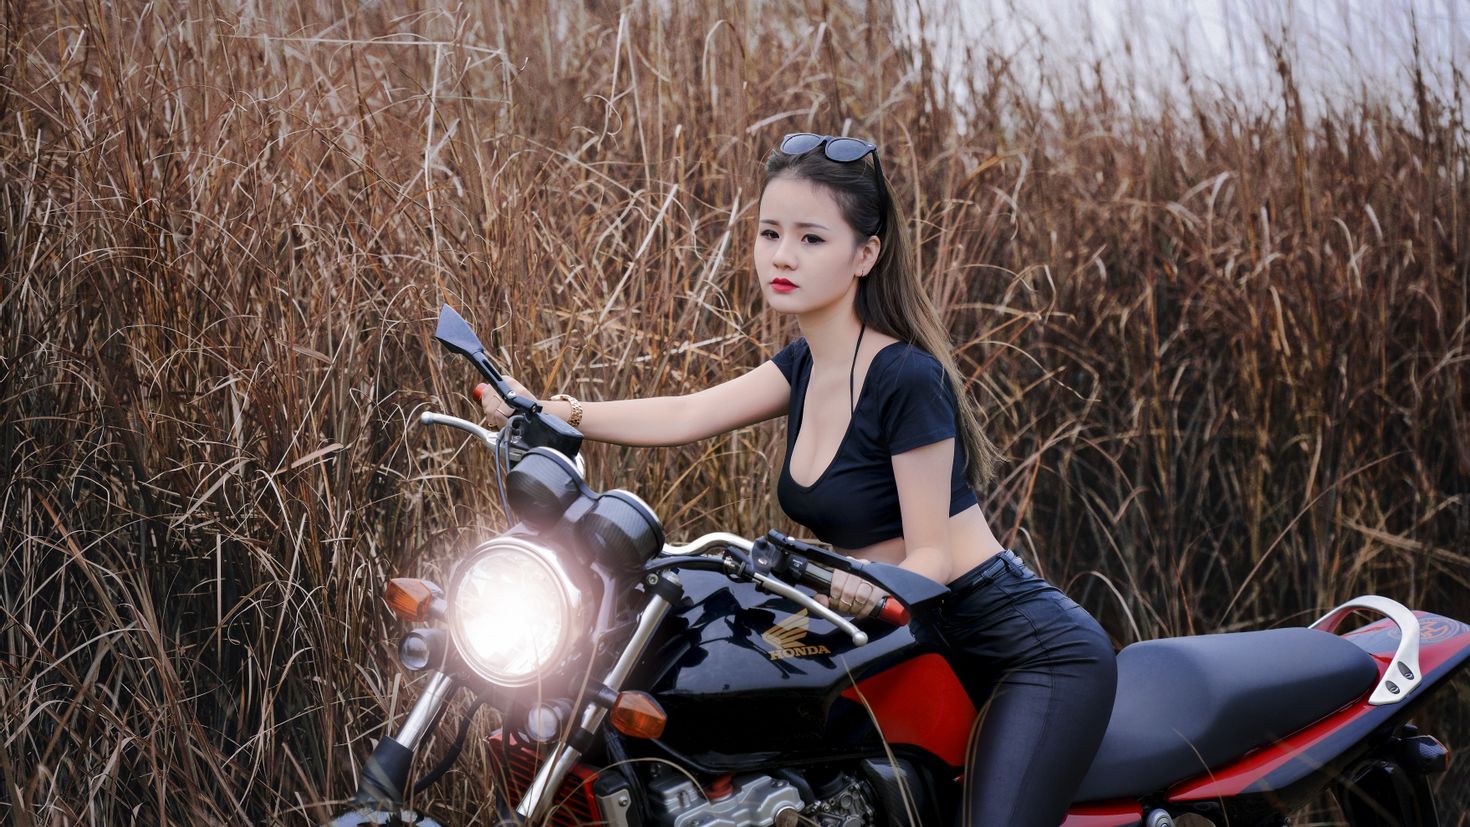 Идеи для фото на мотоцикле девушка